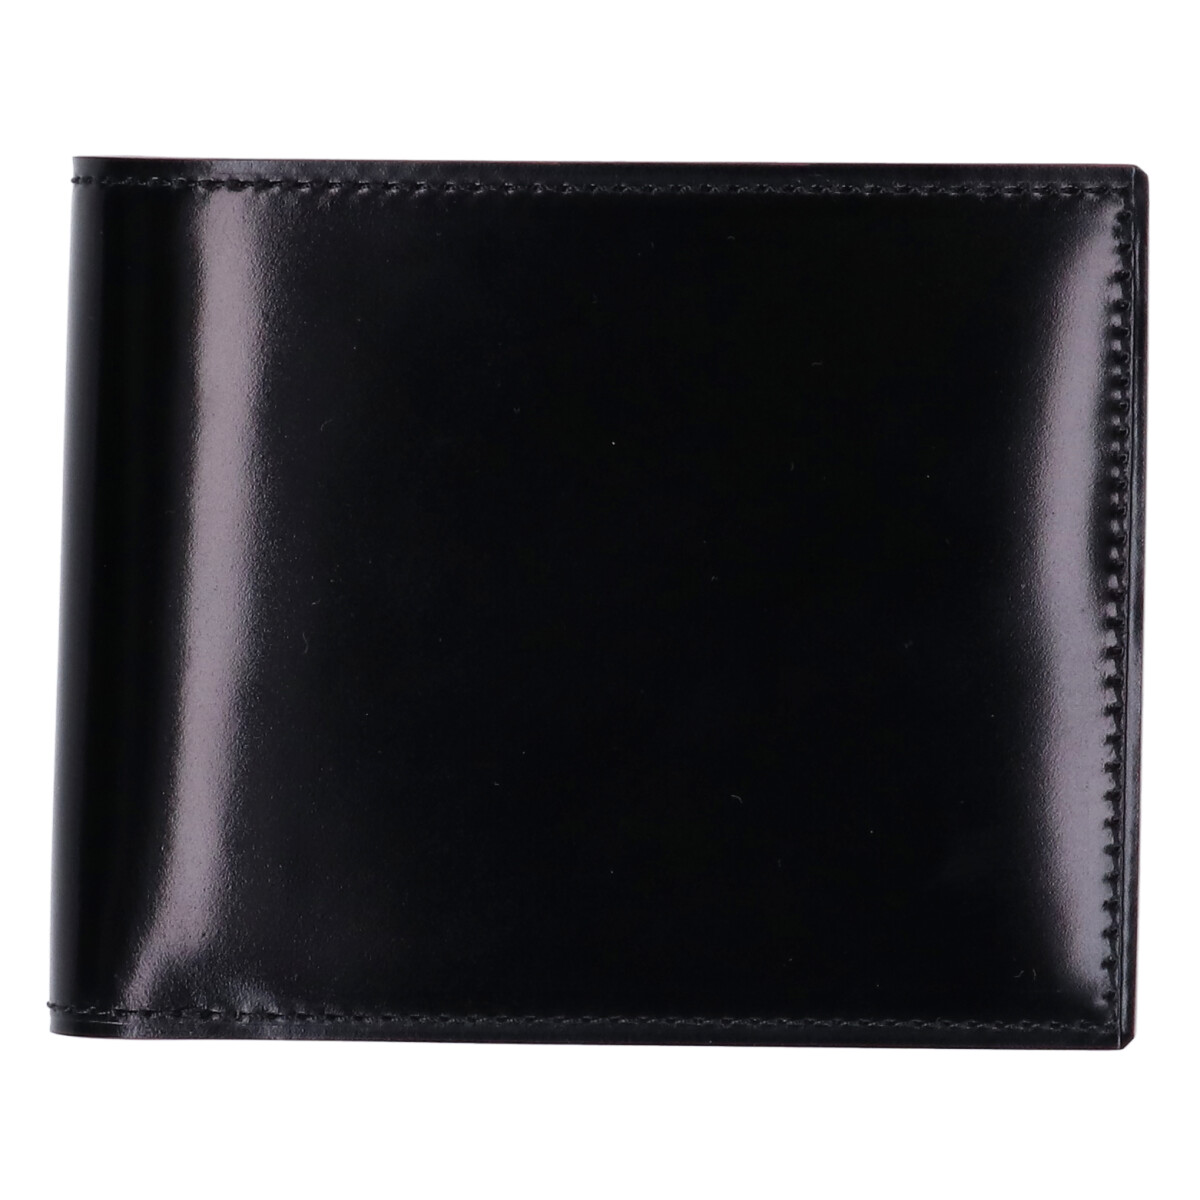 ガンゾの57879 CORDOVAN コードバン 小銭入れ付き二つ折り財布の買取実績です。